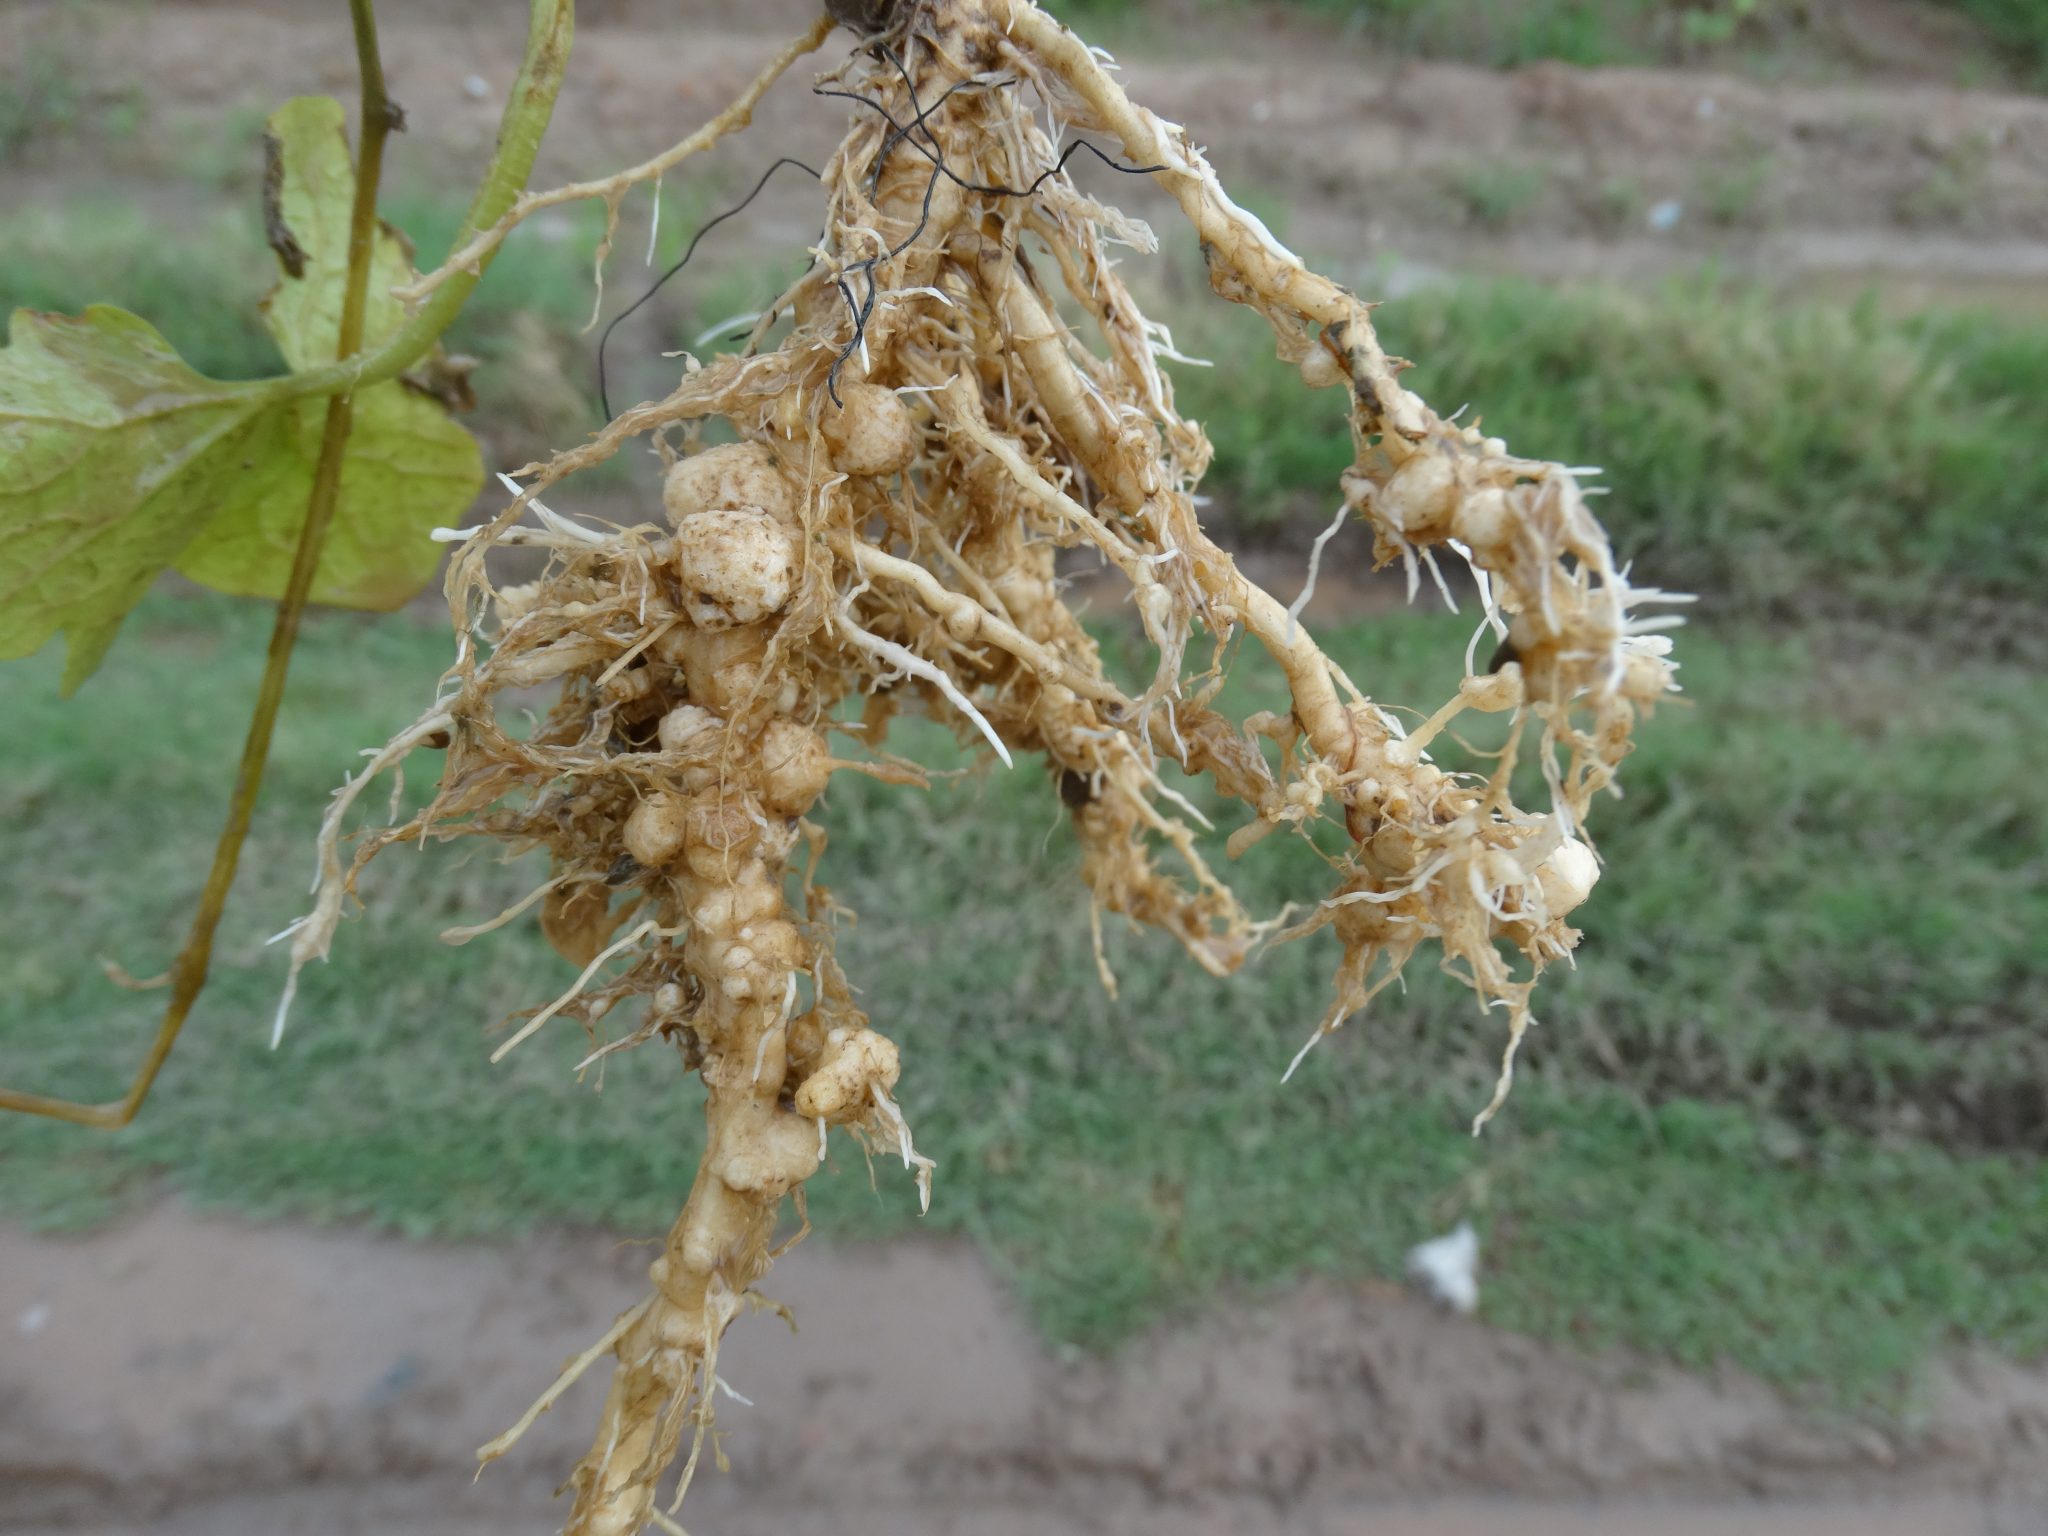 Root knot nematode